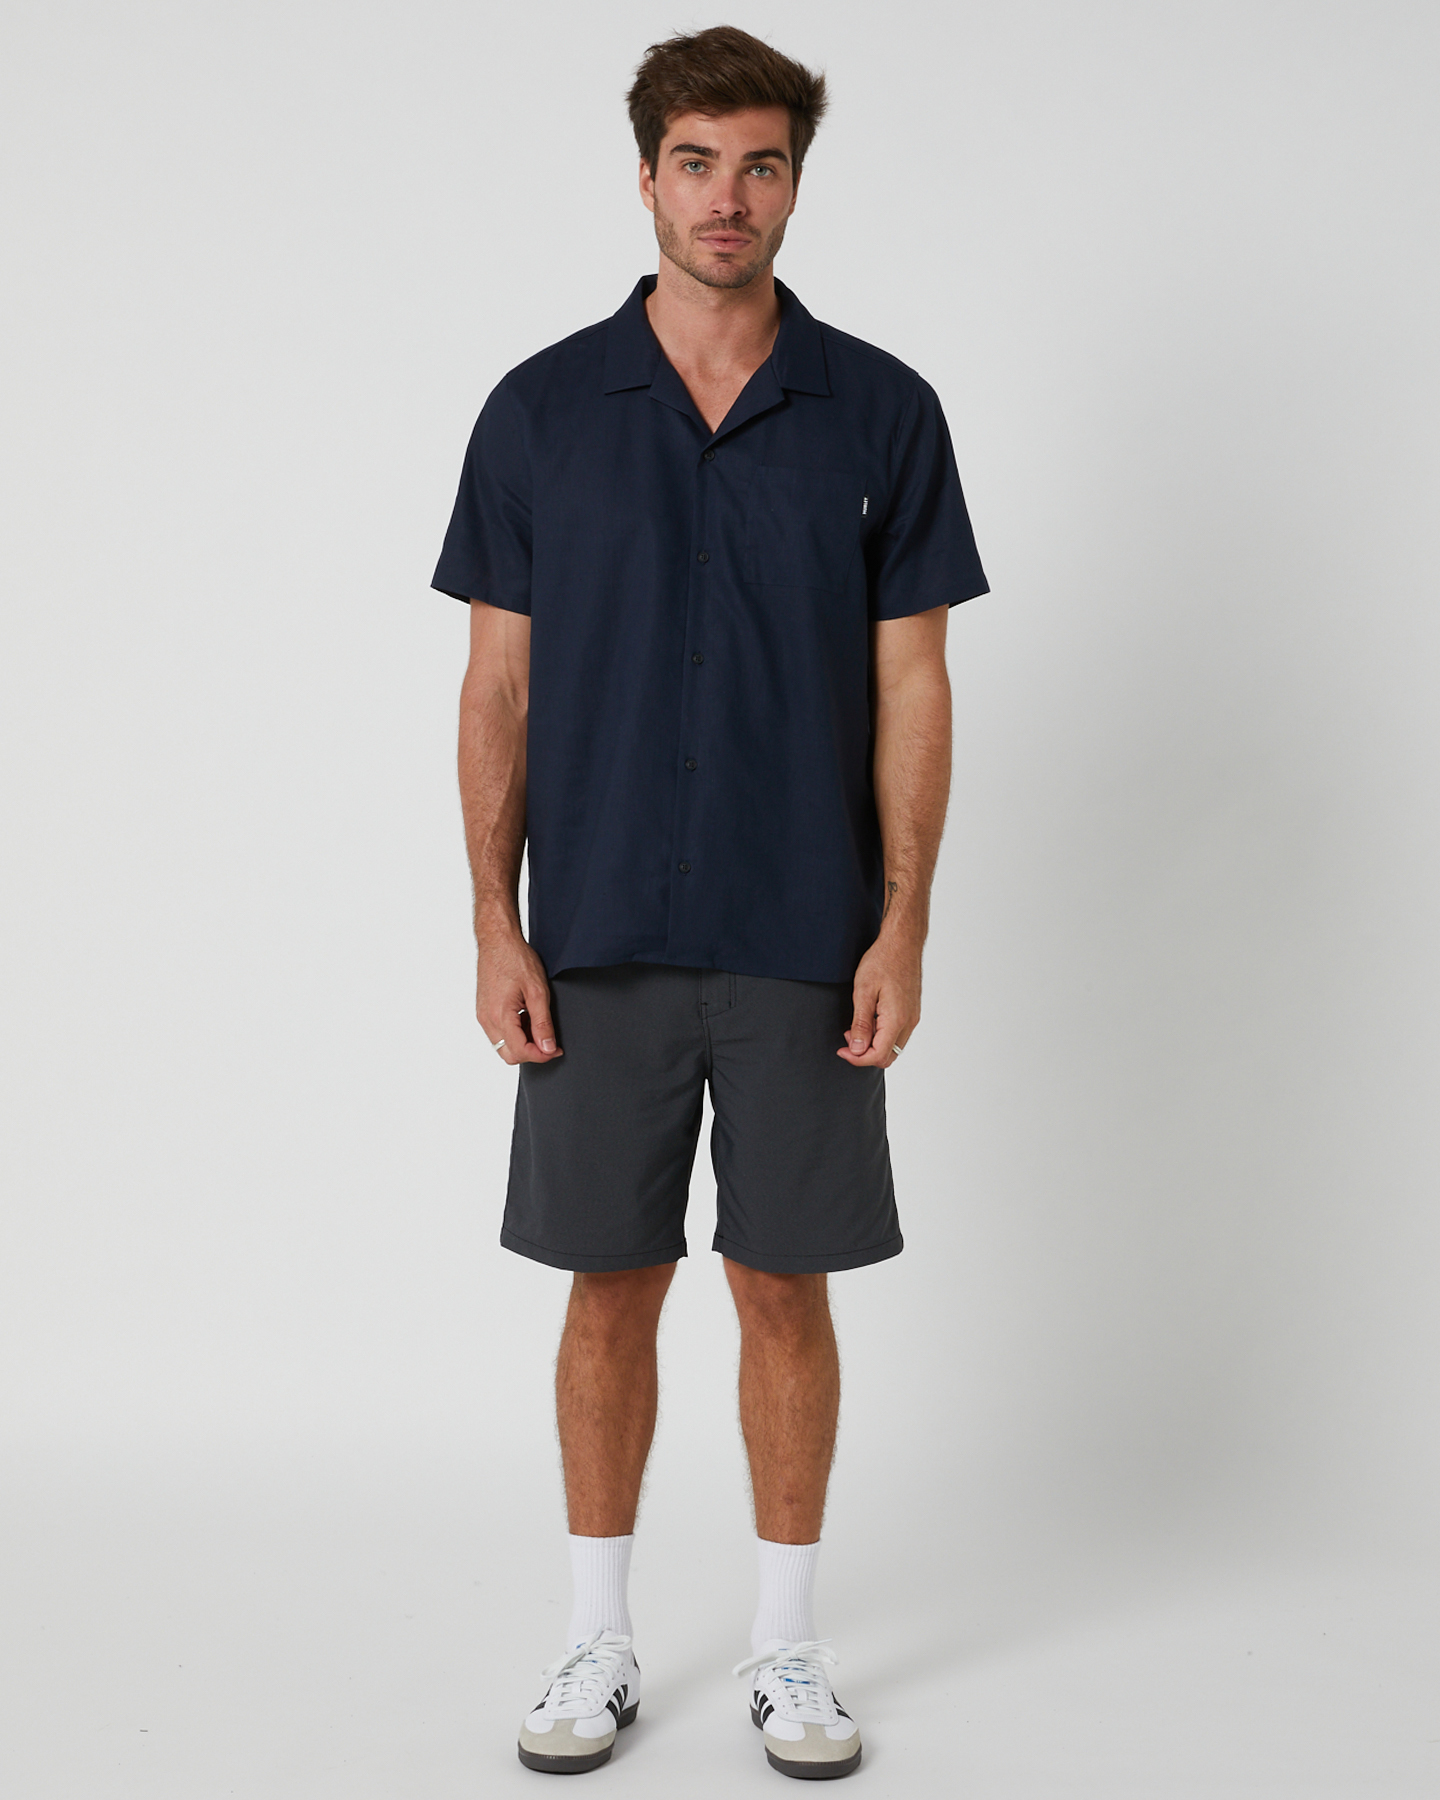 Hurley Camp Texture Ss Shirt - Indigo | SurfStitch